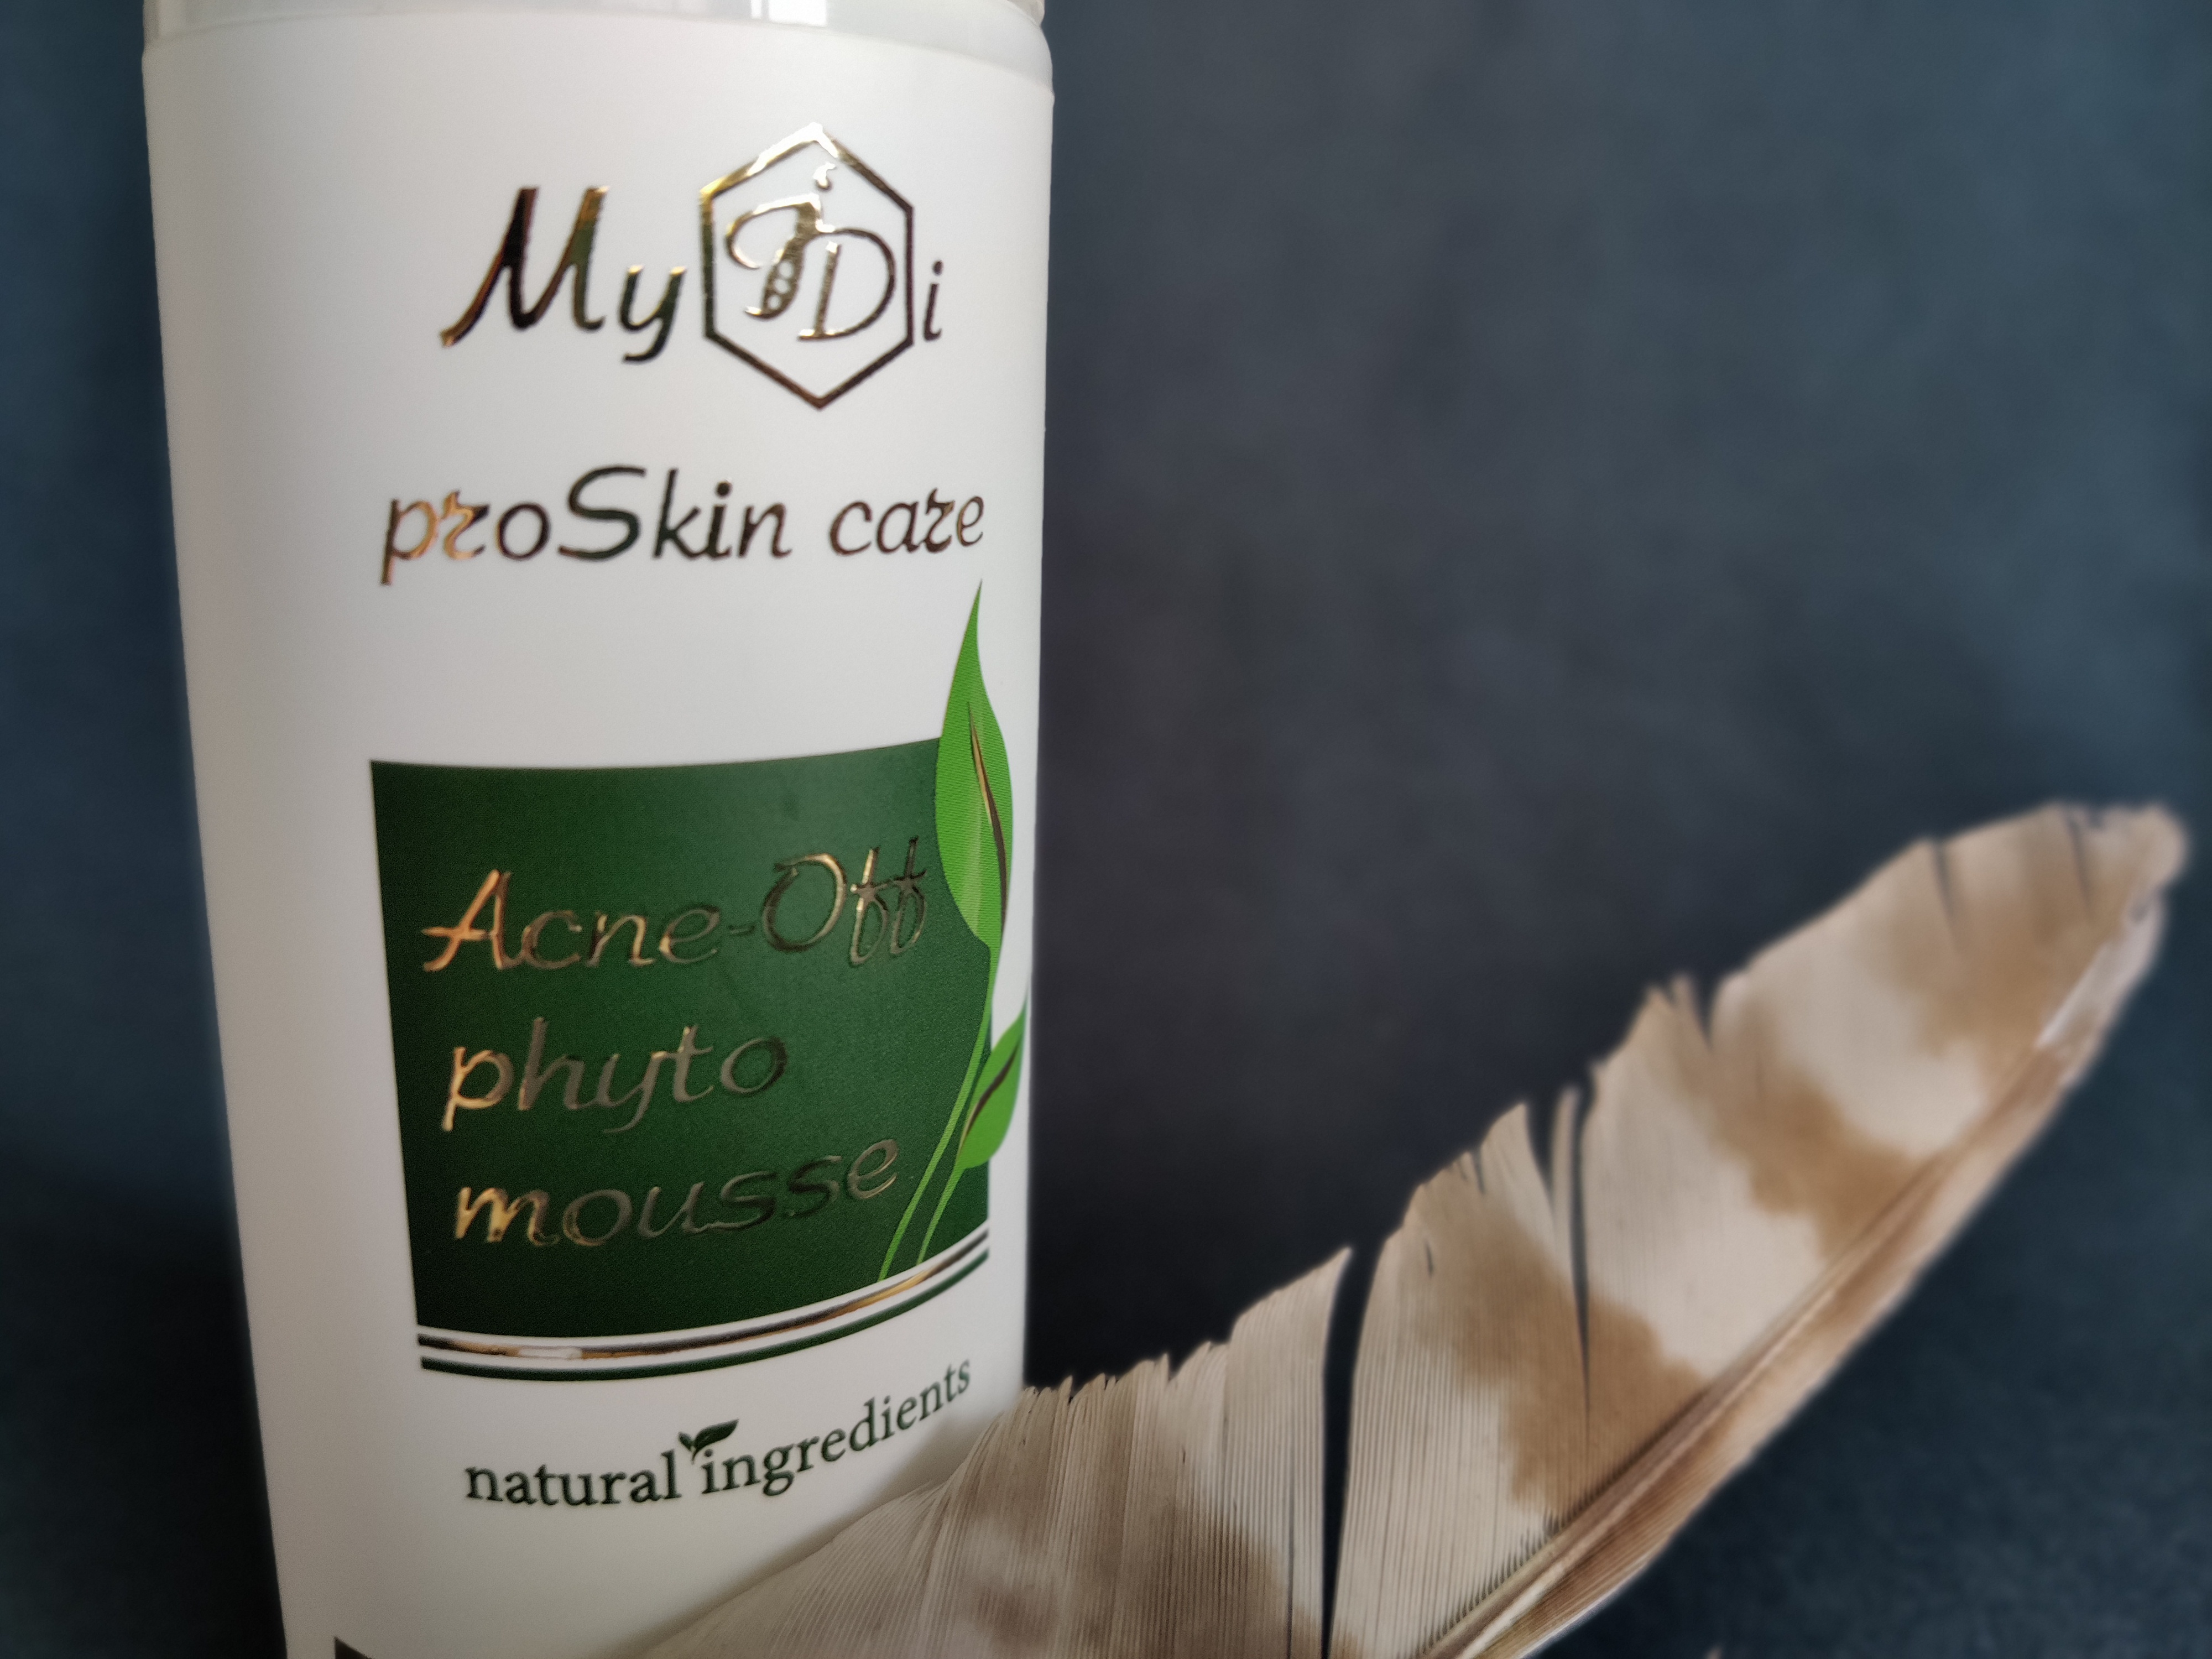 Очищувальний мус для проблемної шкіри MyIDi Acne-Off Phyto Mousse